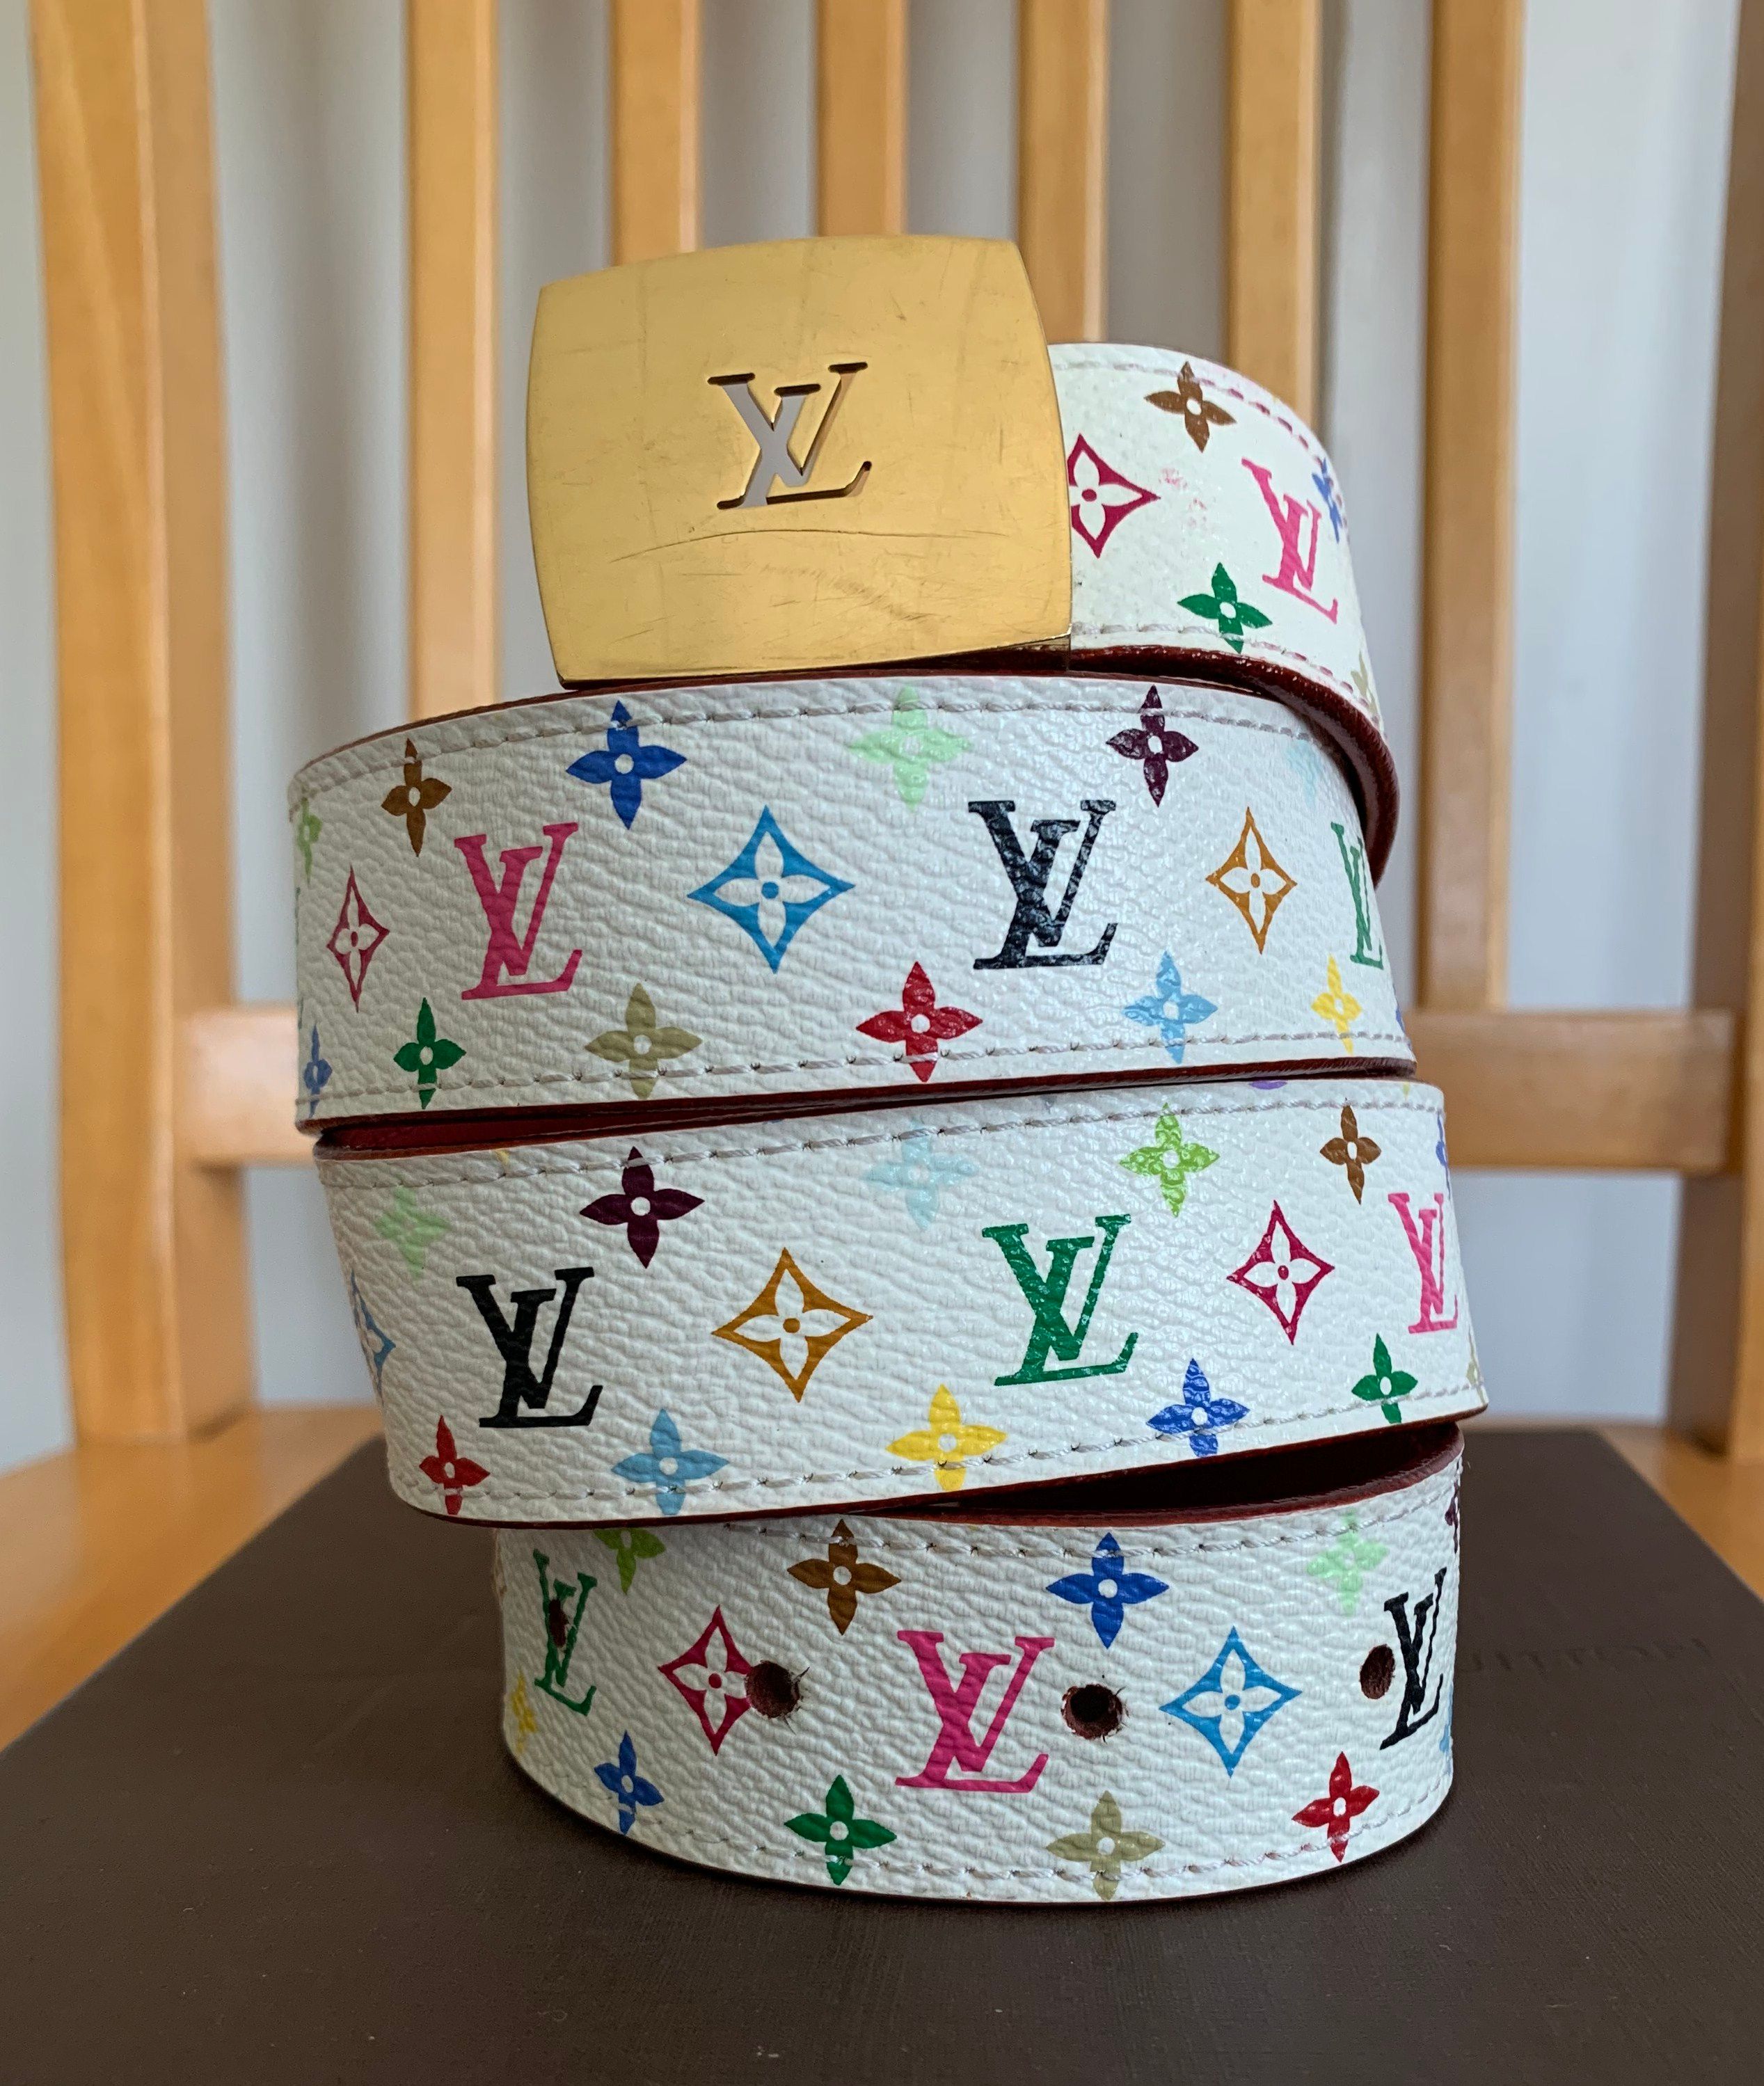 murakami multicolor monogram belt